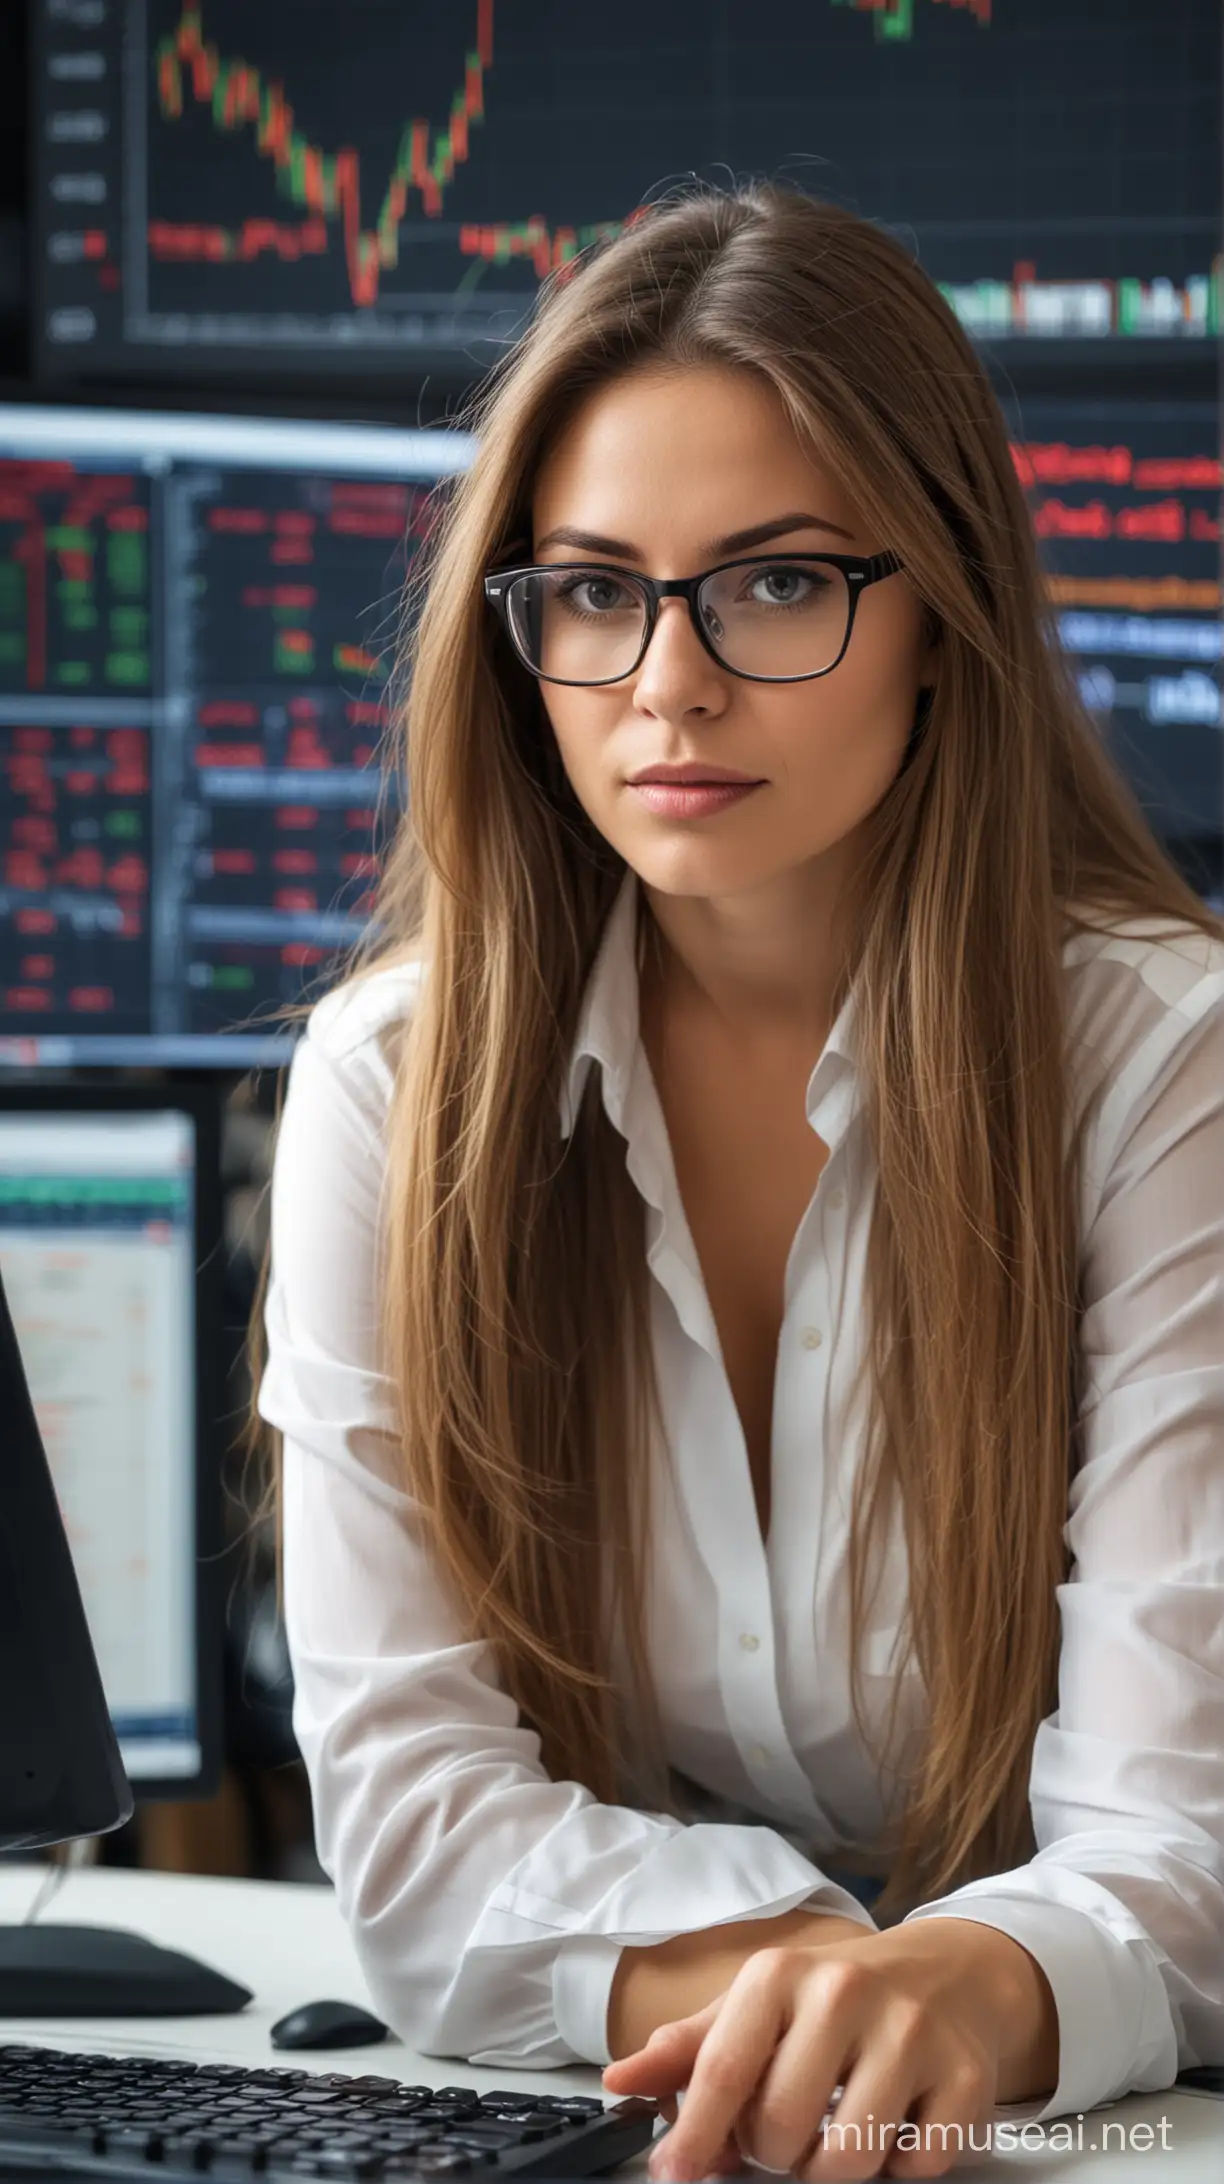 Traderka kobieta  przy komputerze w okularach , długie włosy , rynki finansowe ,pracuje 

